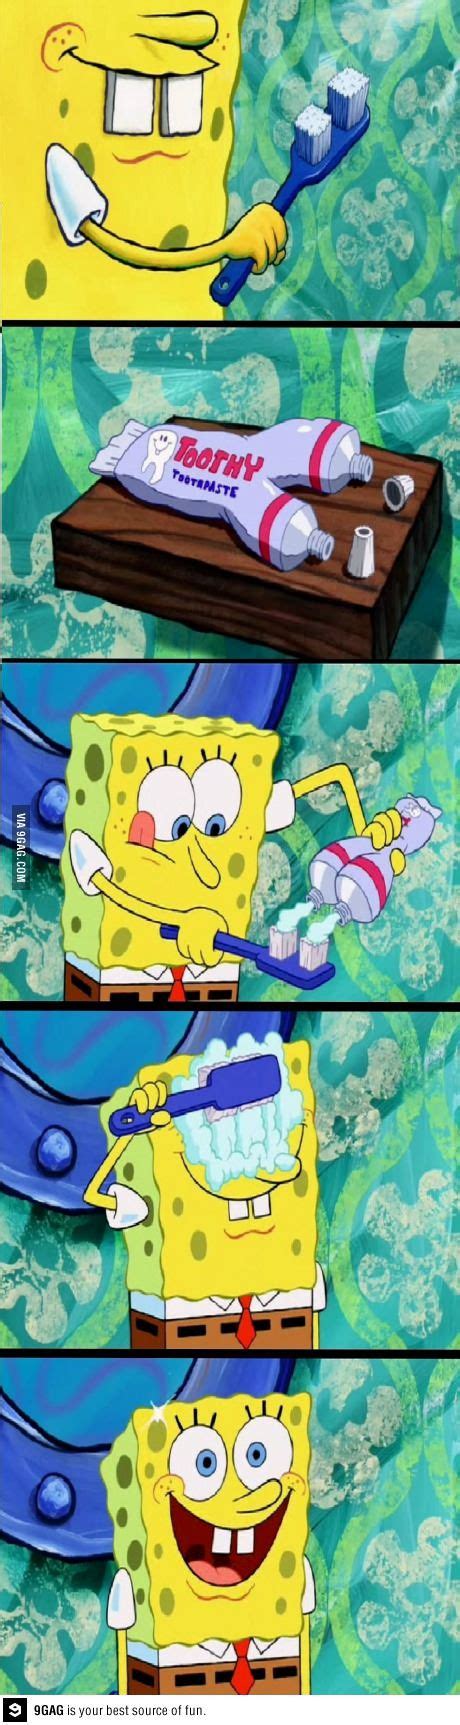 Spongebob Meme Eyes Crossed Spongebob Brushing His Eyes Meme Format